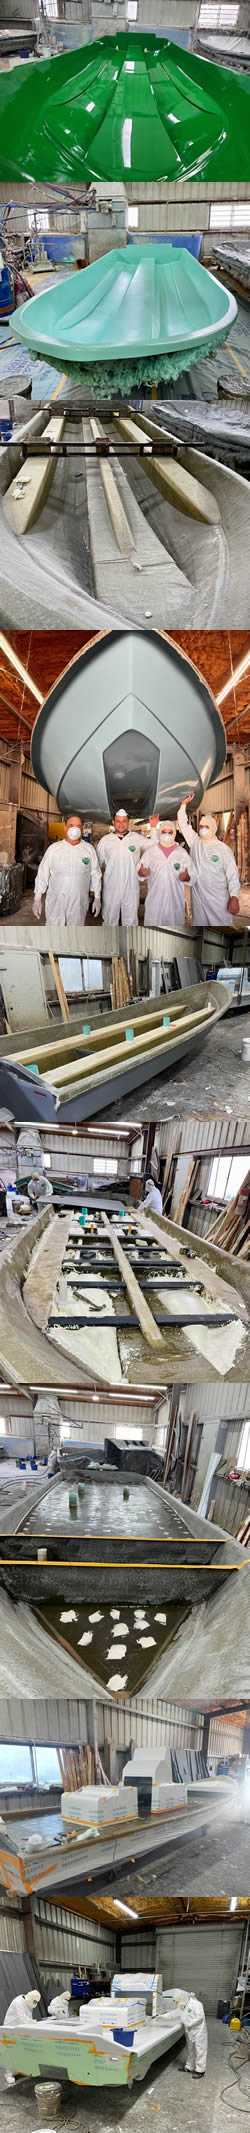 Construction of Mowdy Flats Boats